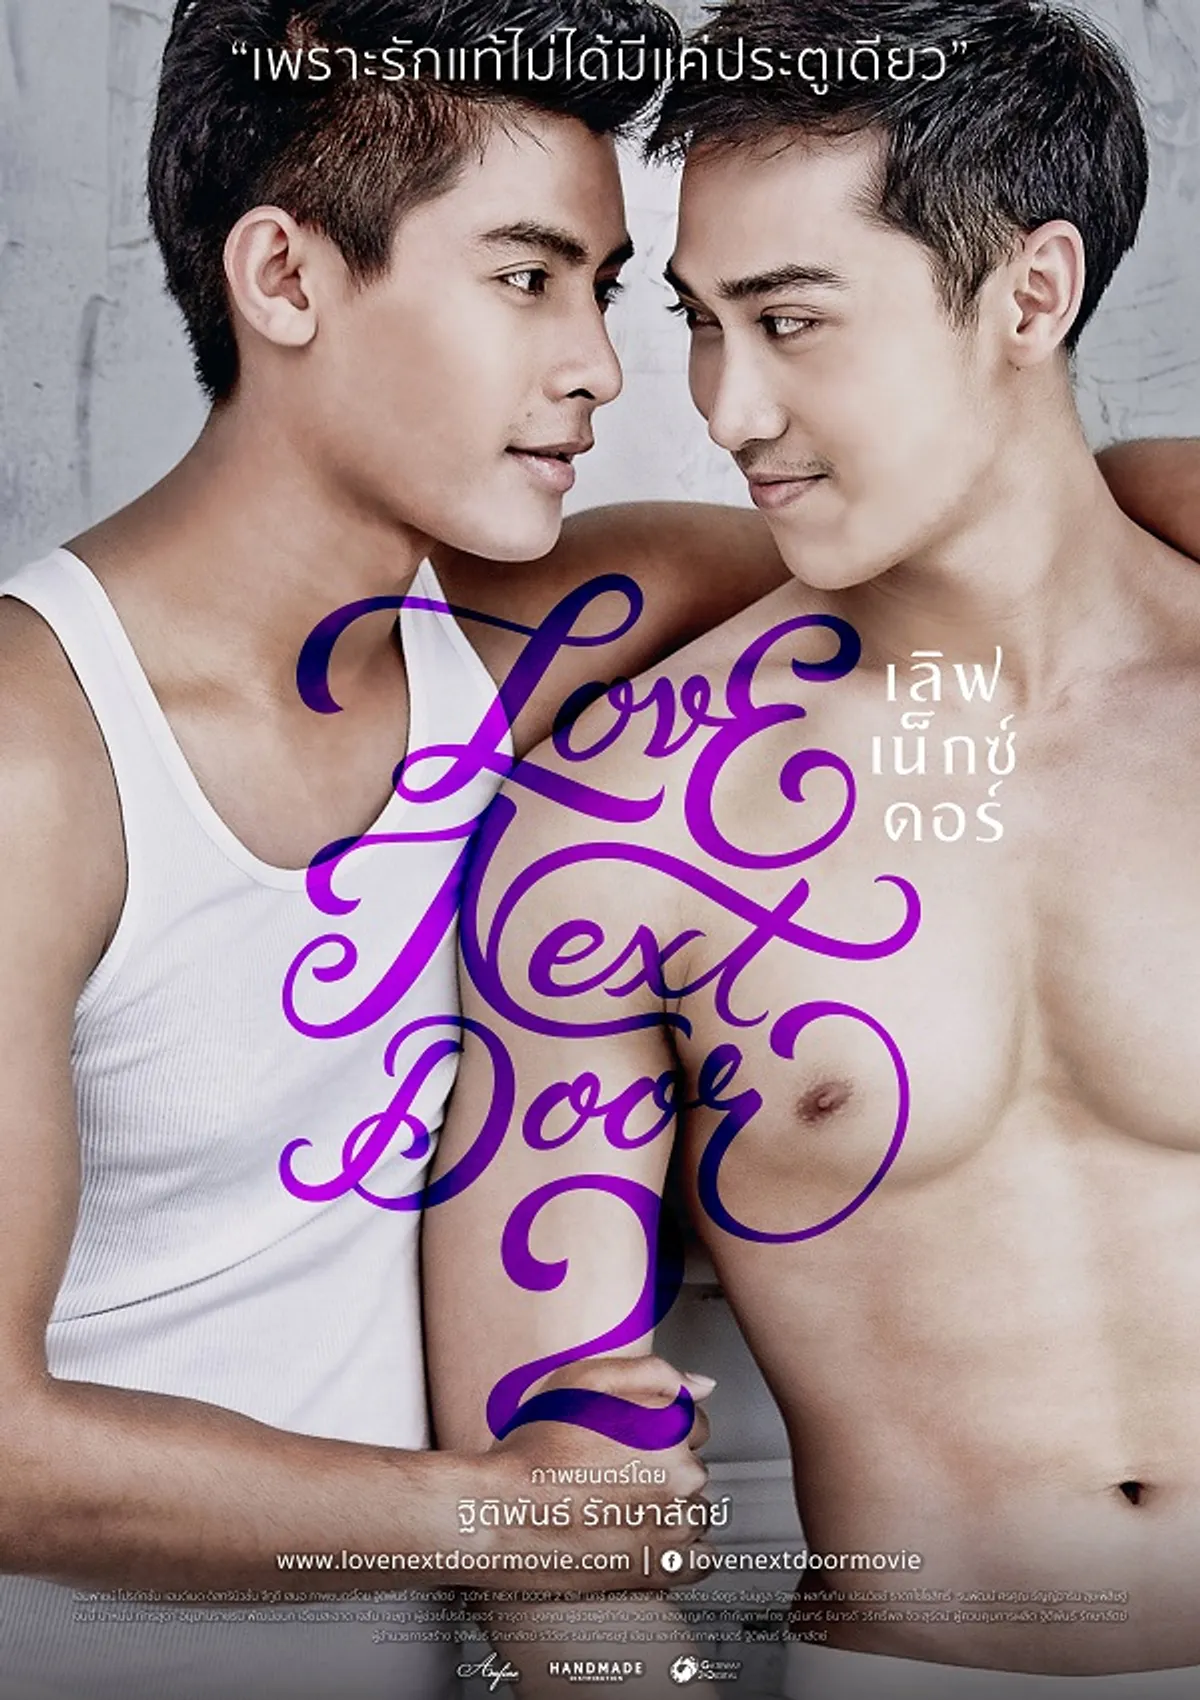 смотреть корейский фильм про геев фото 48